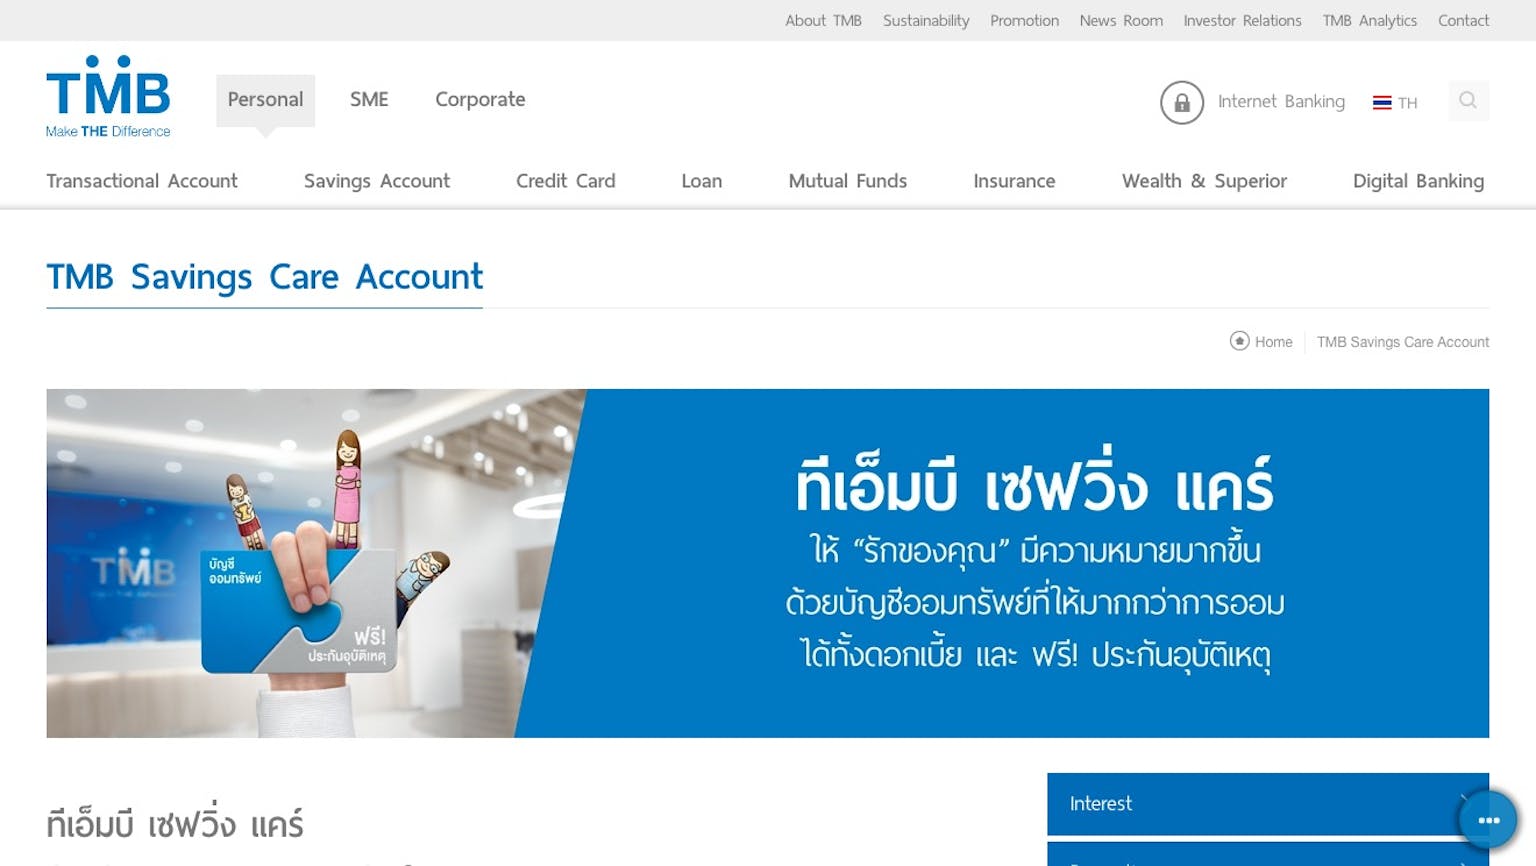 ทีเอ็มบี เซฟวิ่ง แคร์ | ธนาคารทหารไทย (การควบรวมของ Ttb) | Moneyduck  Thailand